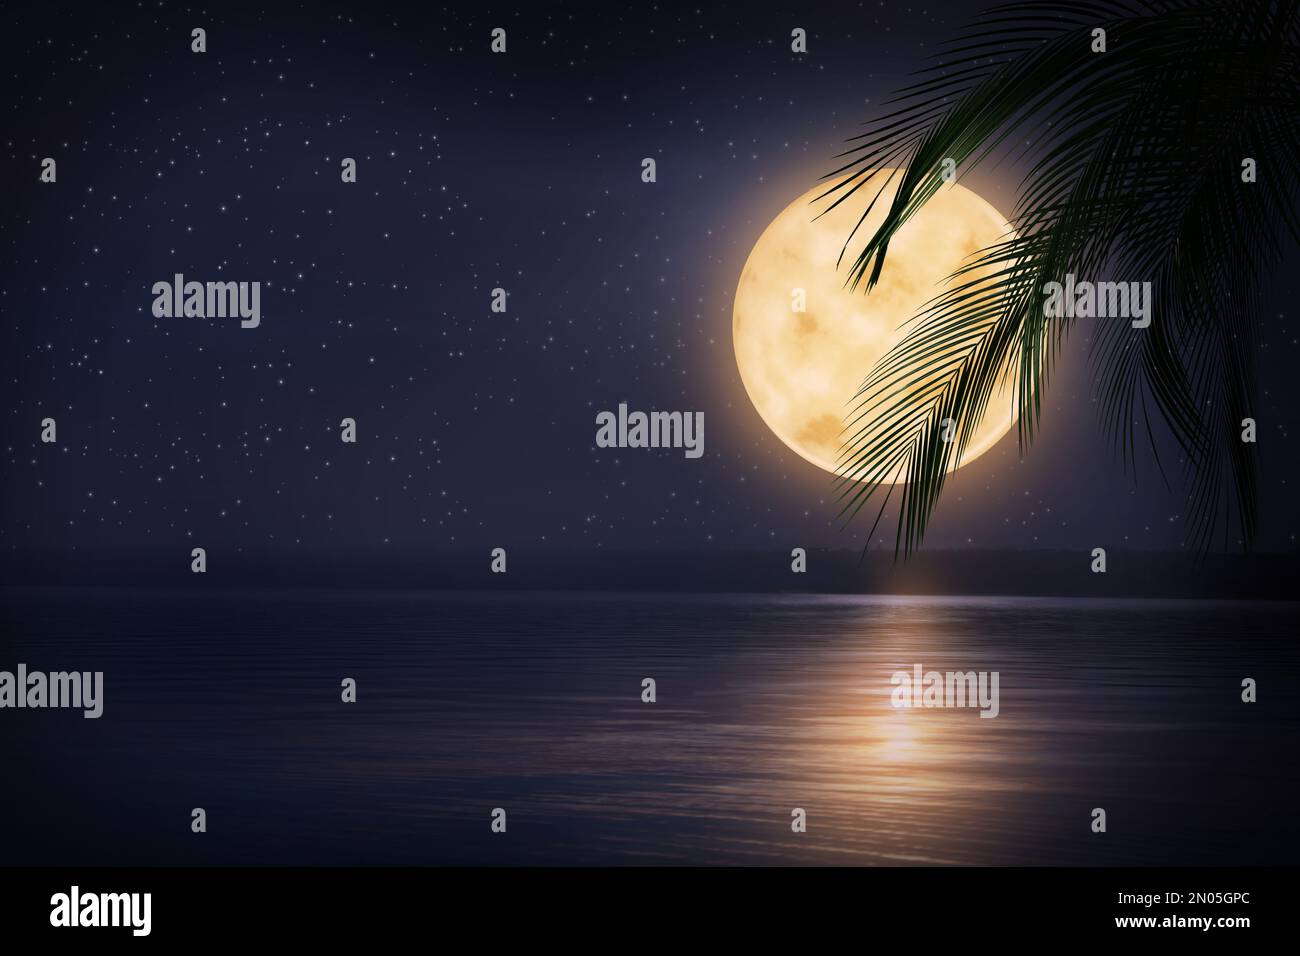 Notte di fantasia. Foglie di palma e luna piena in cielo stellato sul mare Foto Stock